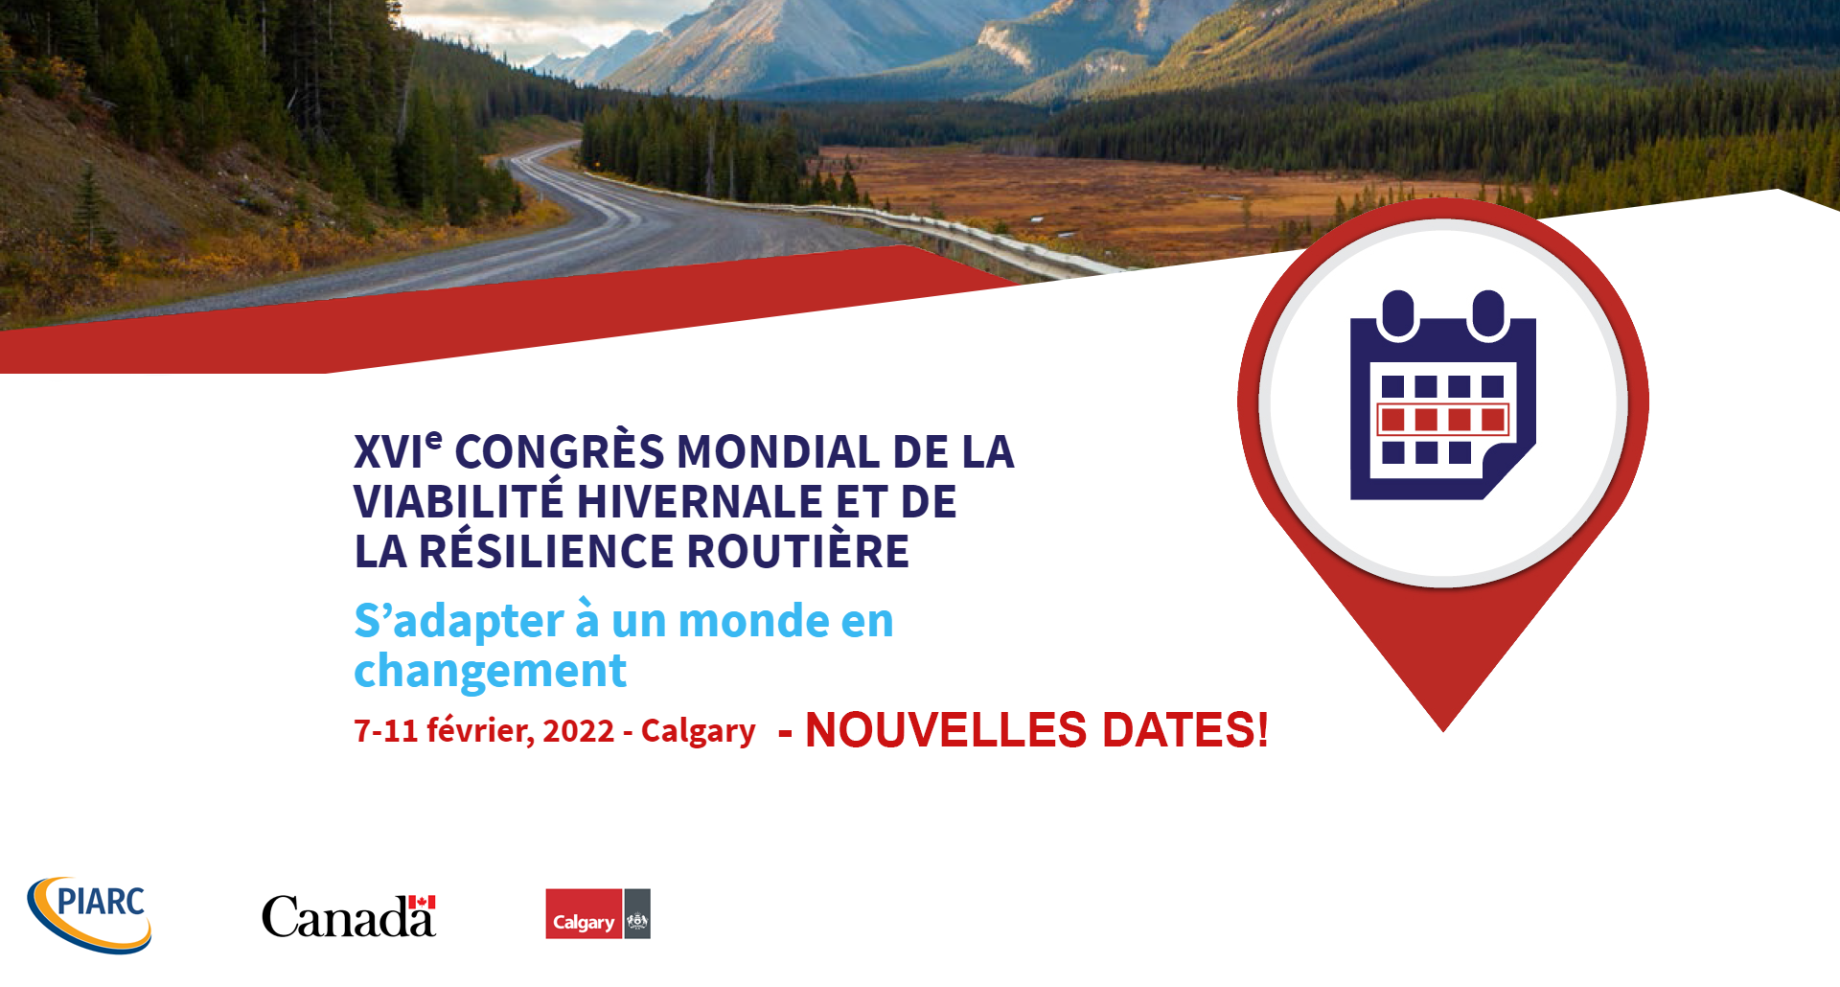 Notez les nouvelles dates du Congrès mondial de la Viabilité hivernale
et de la Résilience routière qui se tiendra à Calgary en 2022 !